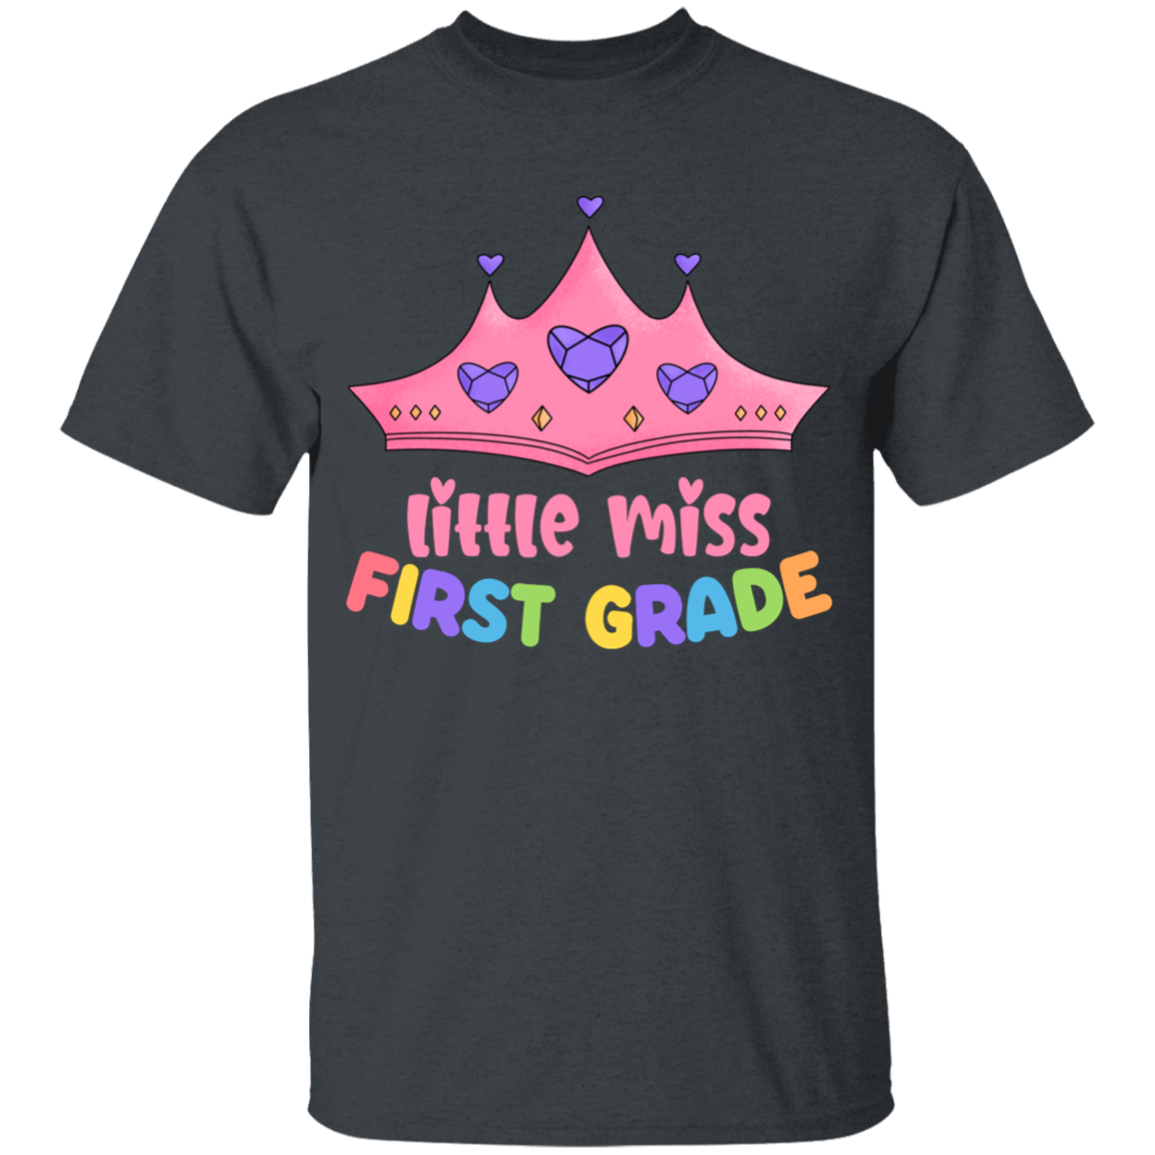 Little Miss First Grade Youth Cotton T-Shirt